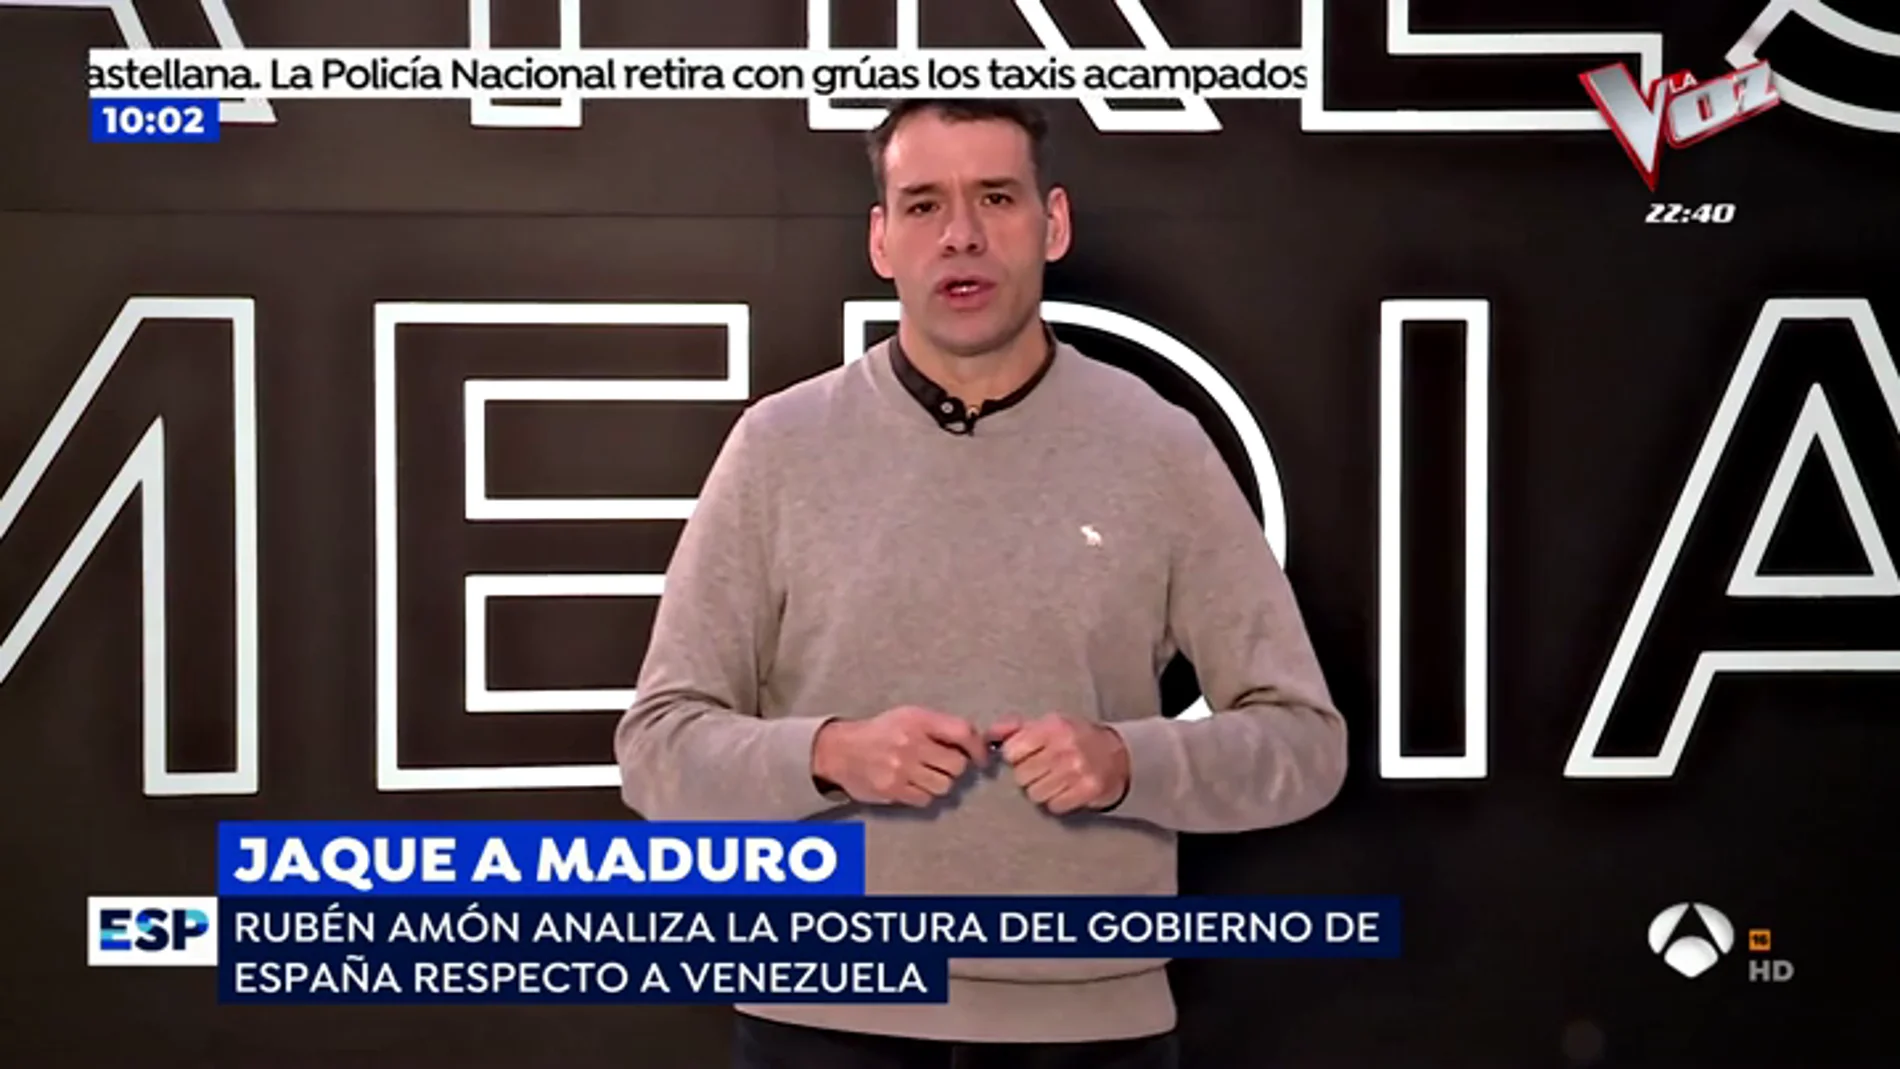 Rubén Amón analiza la situación en Venezuela: "Pedro Sánchez le tiende una mano a Guaidó y otra a Maduro"